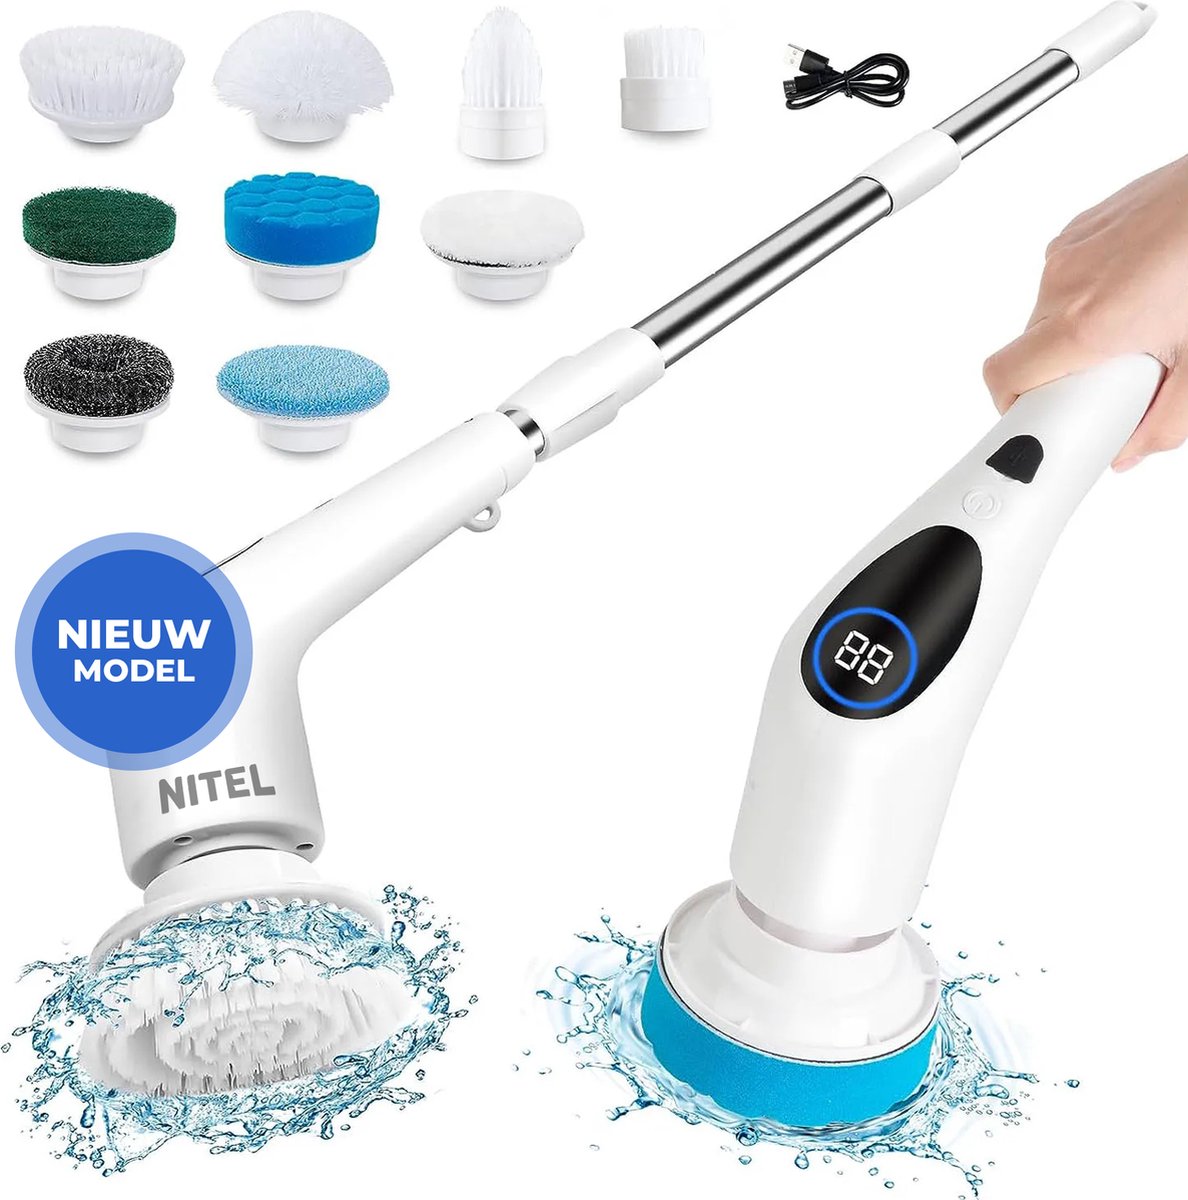 GoScrub® Cleaning King V2 - Brosse de nettoyage électrique